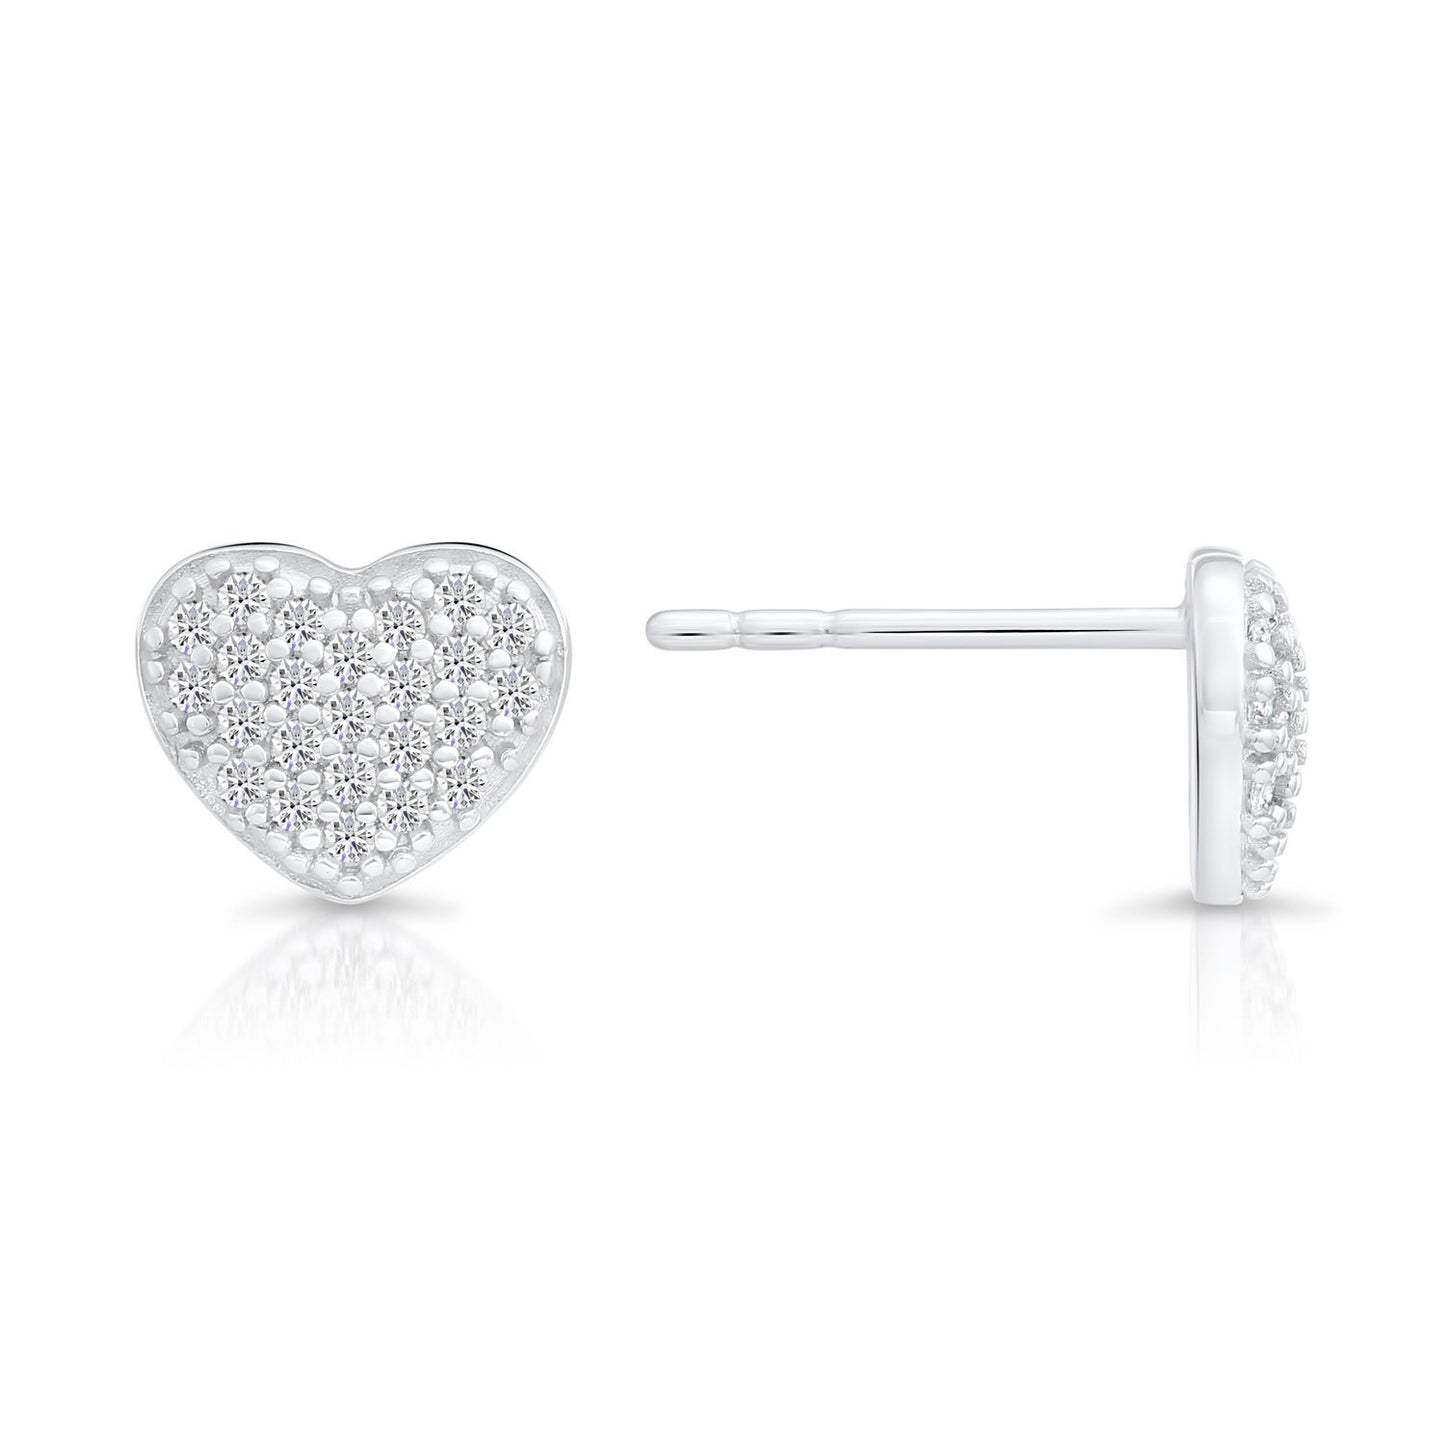 Sterling Silver Small Heart Stud Earrings, 1009